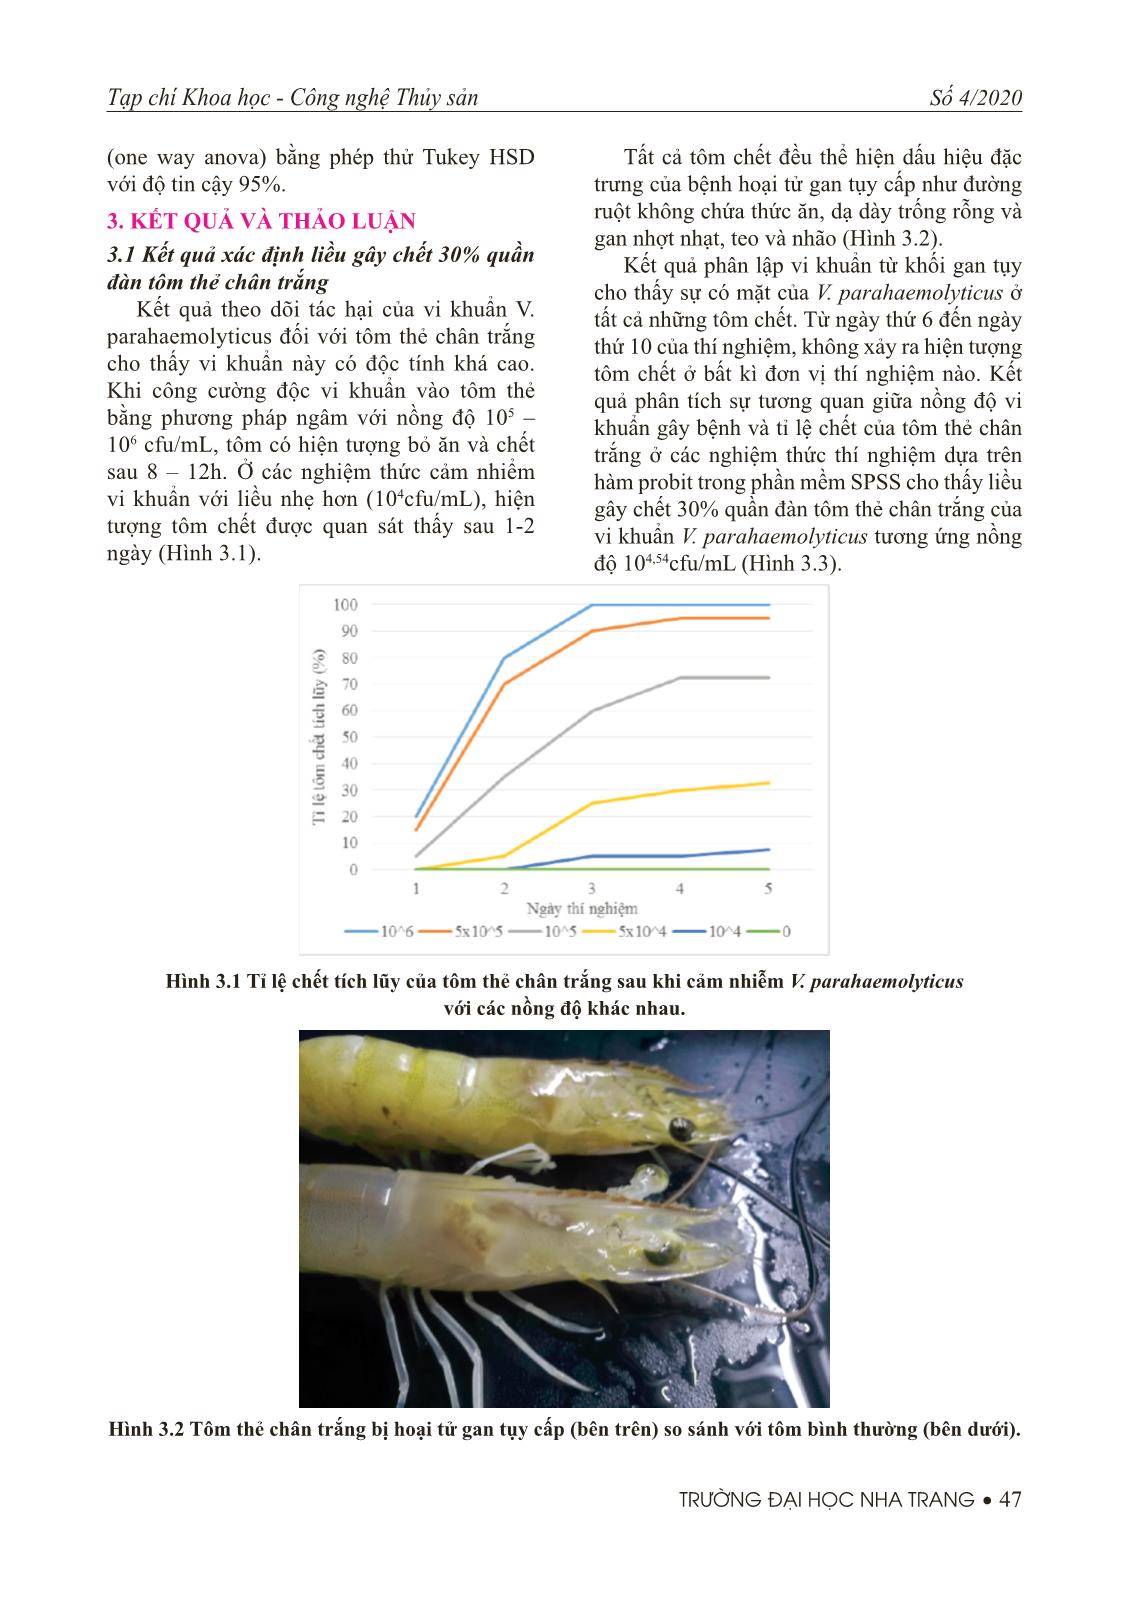 Tác động của việc bổ sung chitin vào thức ăn lên khả năng kháng lại vibrio parahaemolyticus của tôm thẻ chân trắng (litopenaeid vannamei) trang 3